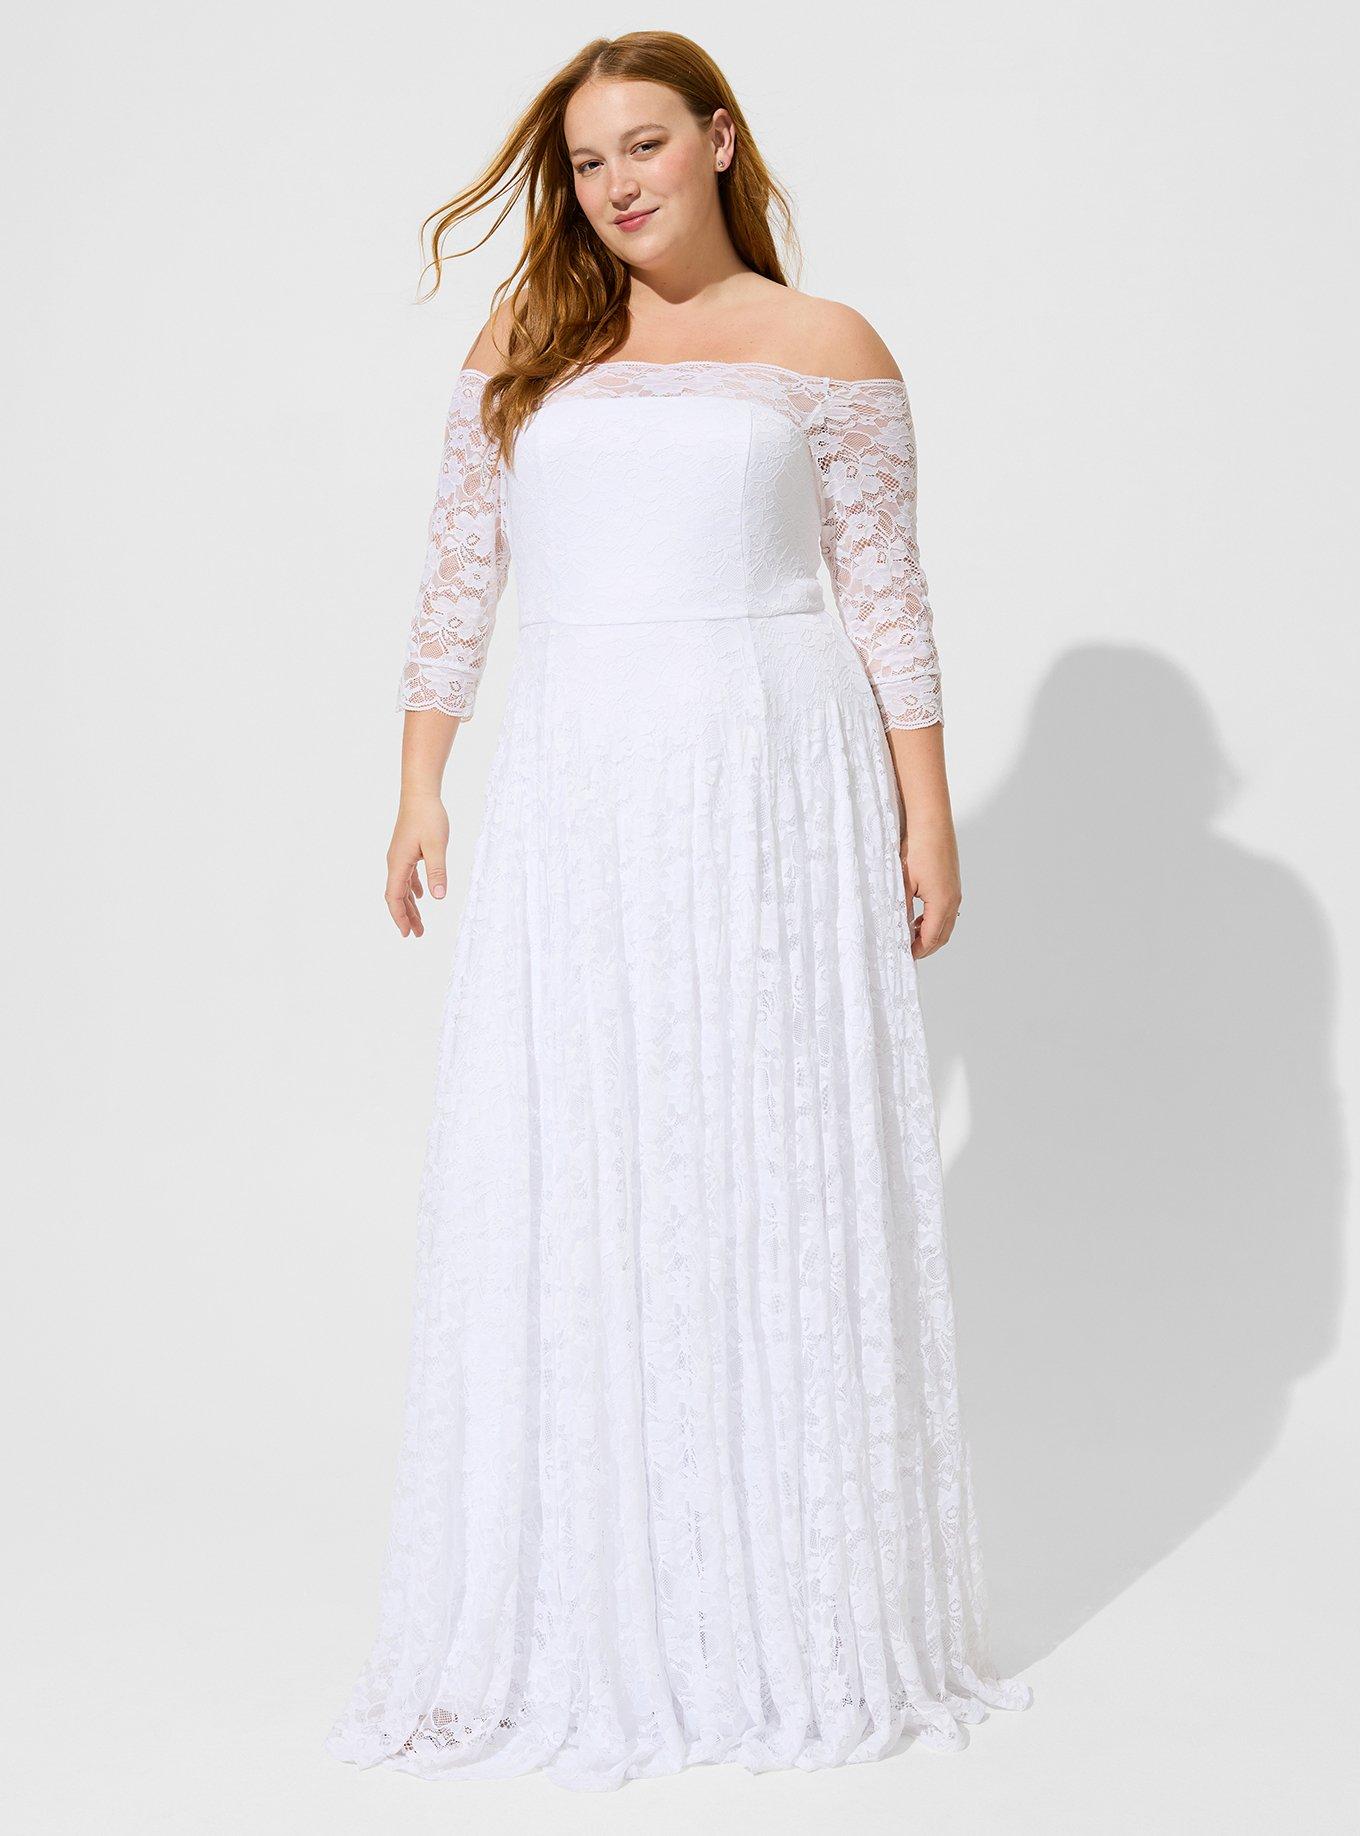 Plus Size - White Lace Off Shoulder A-Line Wedding Dress - Torrid